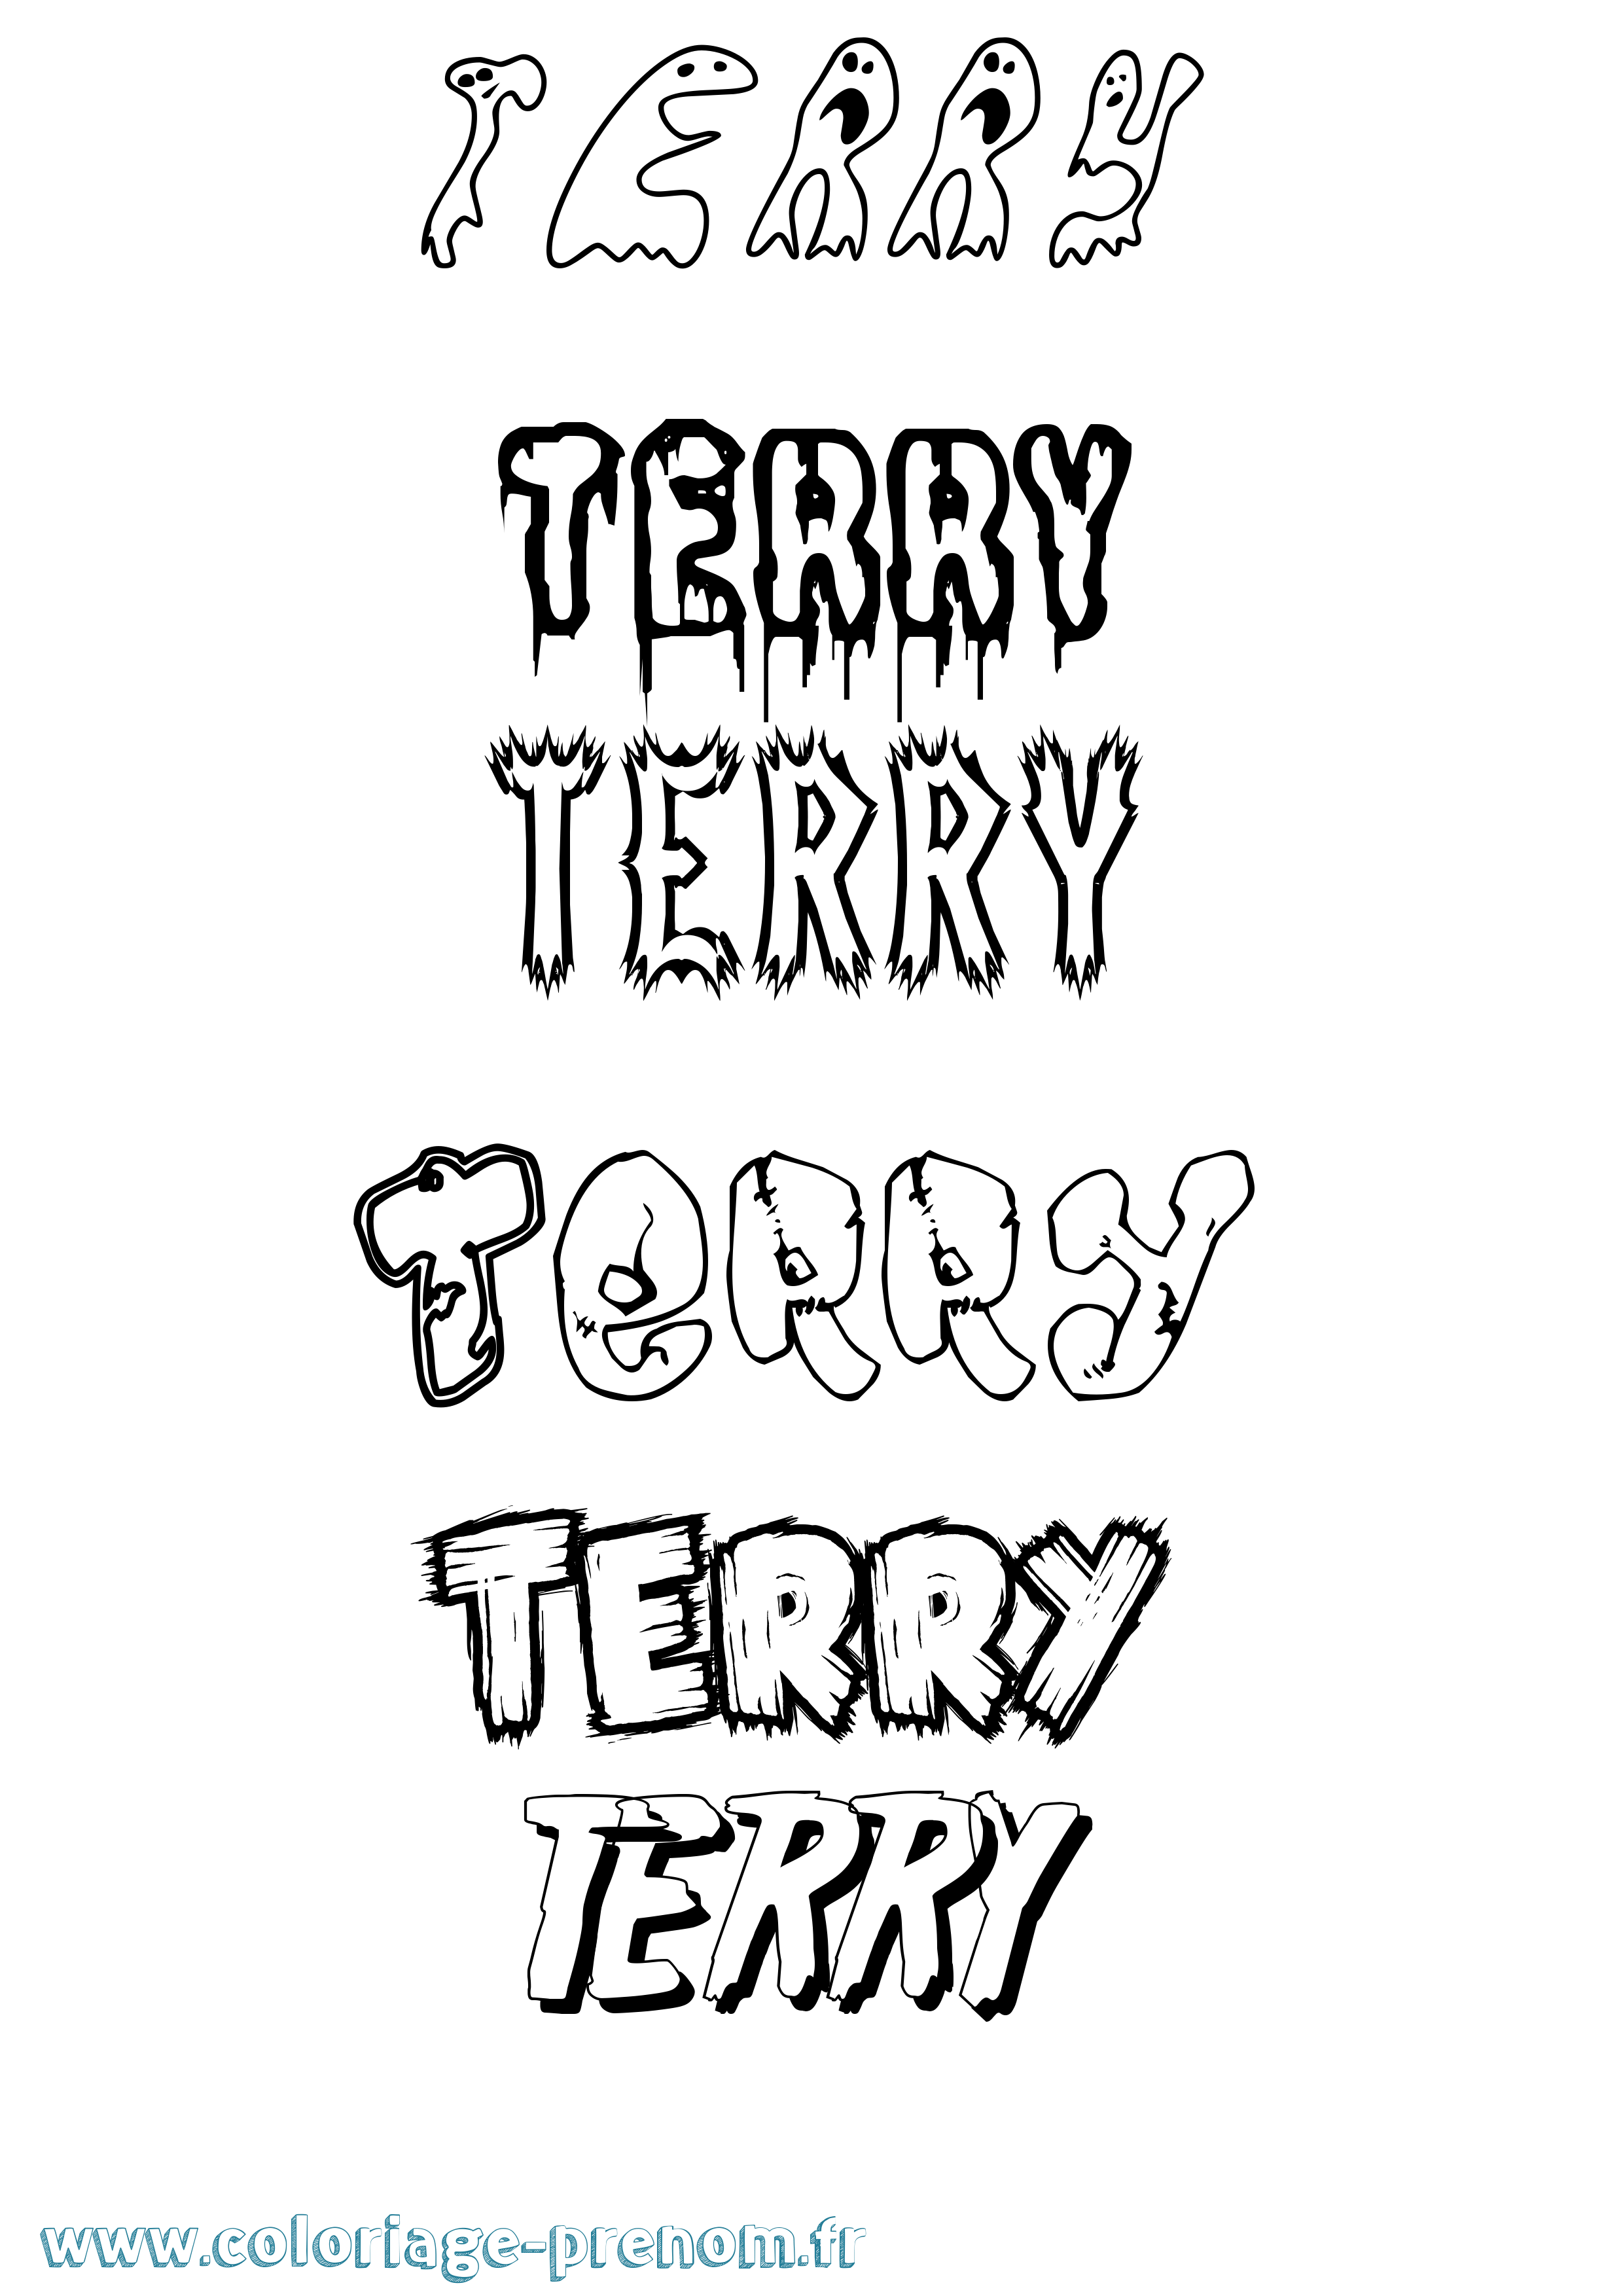 Coloriage prénom Terry Frisson